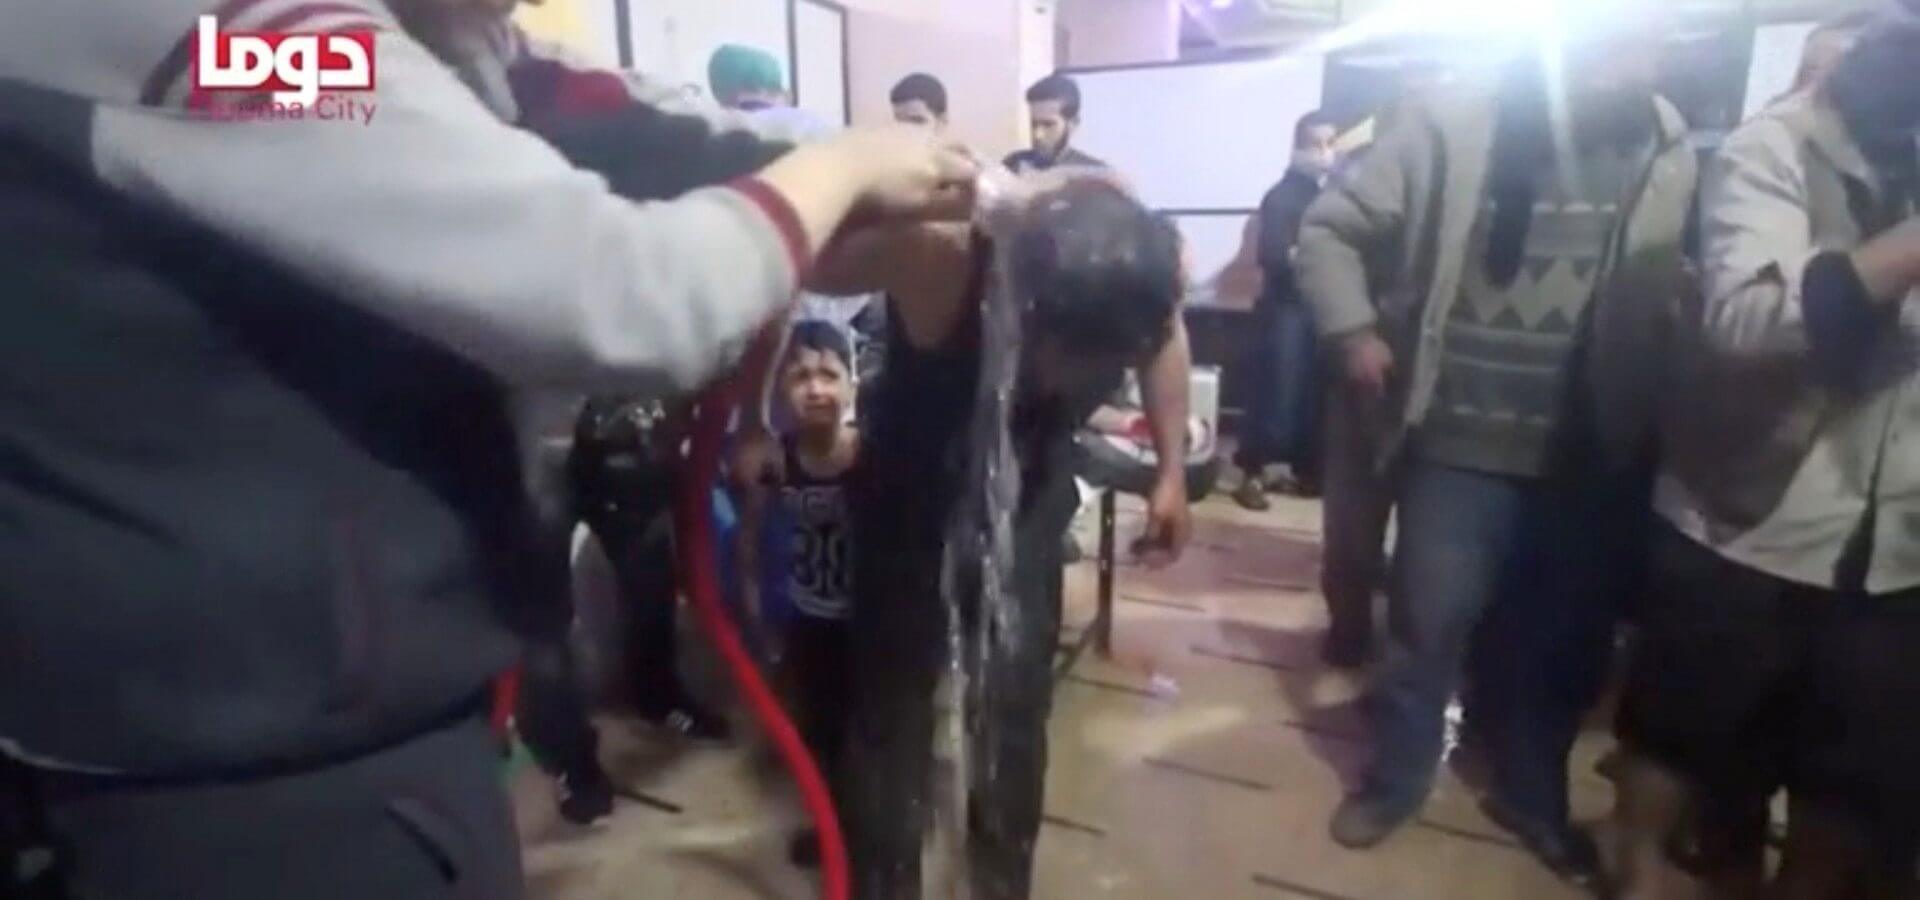 Douma Syria | Chemical attack